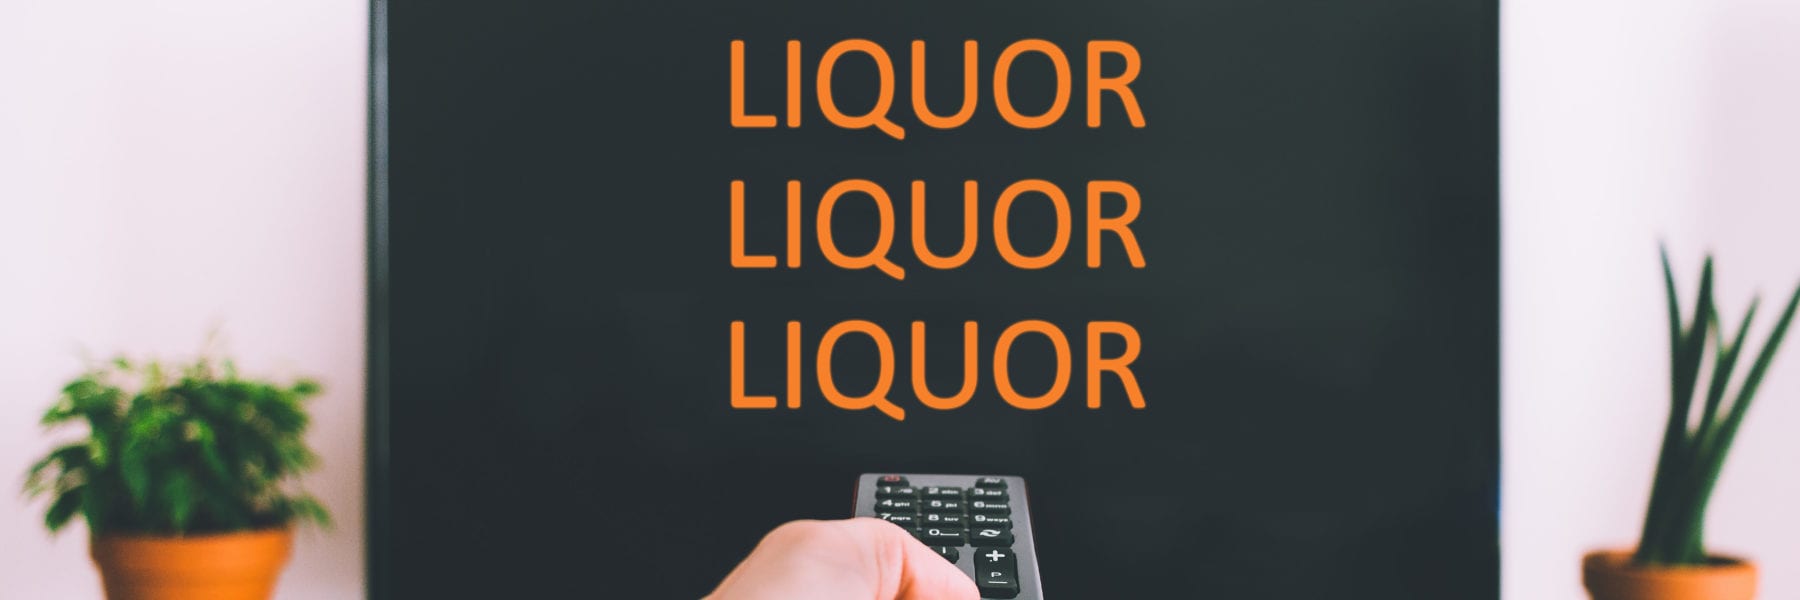 alcohol marketing ads promo tv liquor